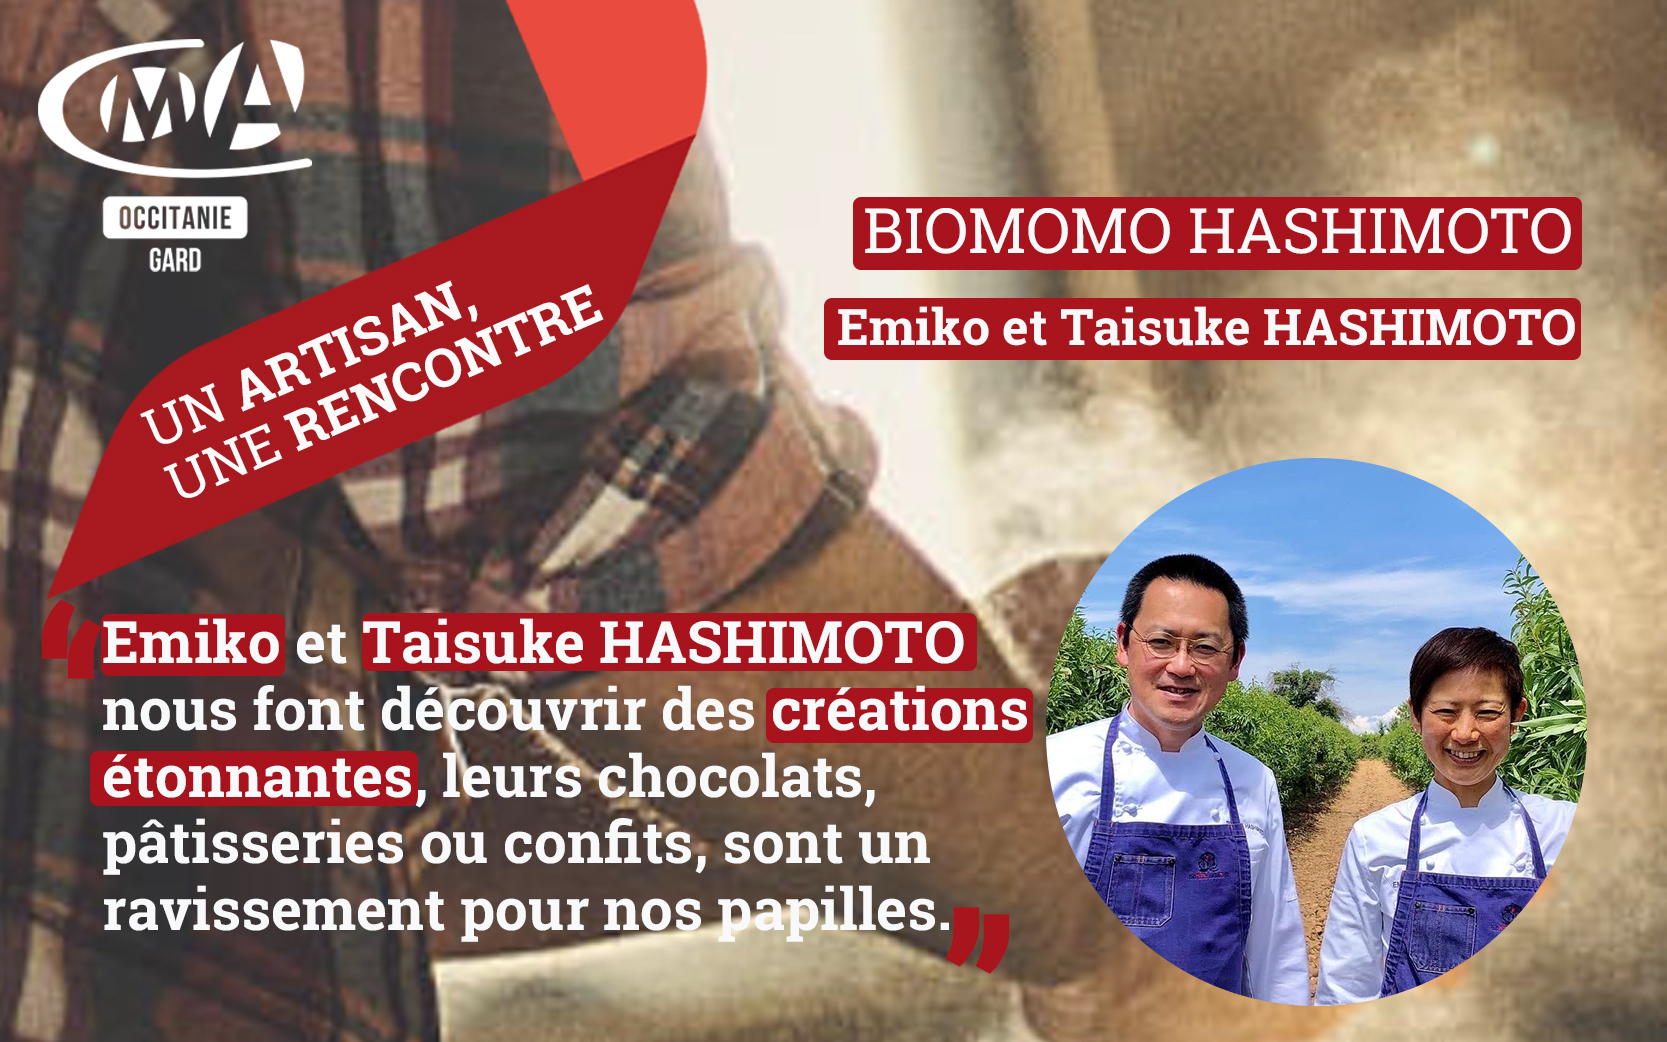 Un artisan une rencontre: Taisuke ET Emiko HASHIMOTO